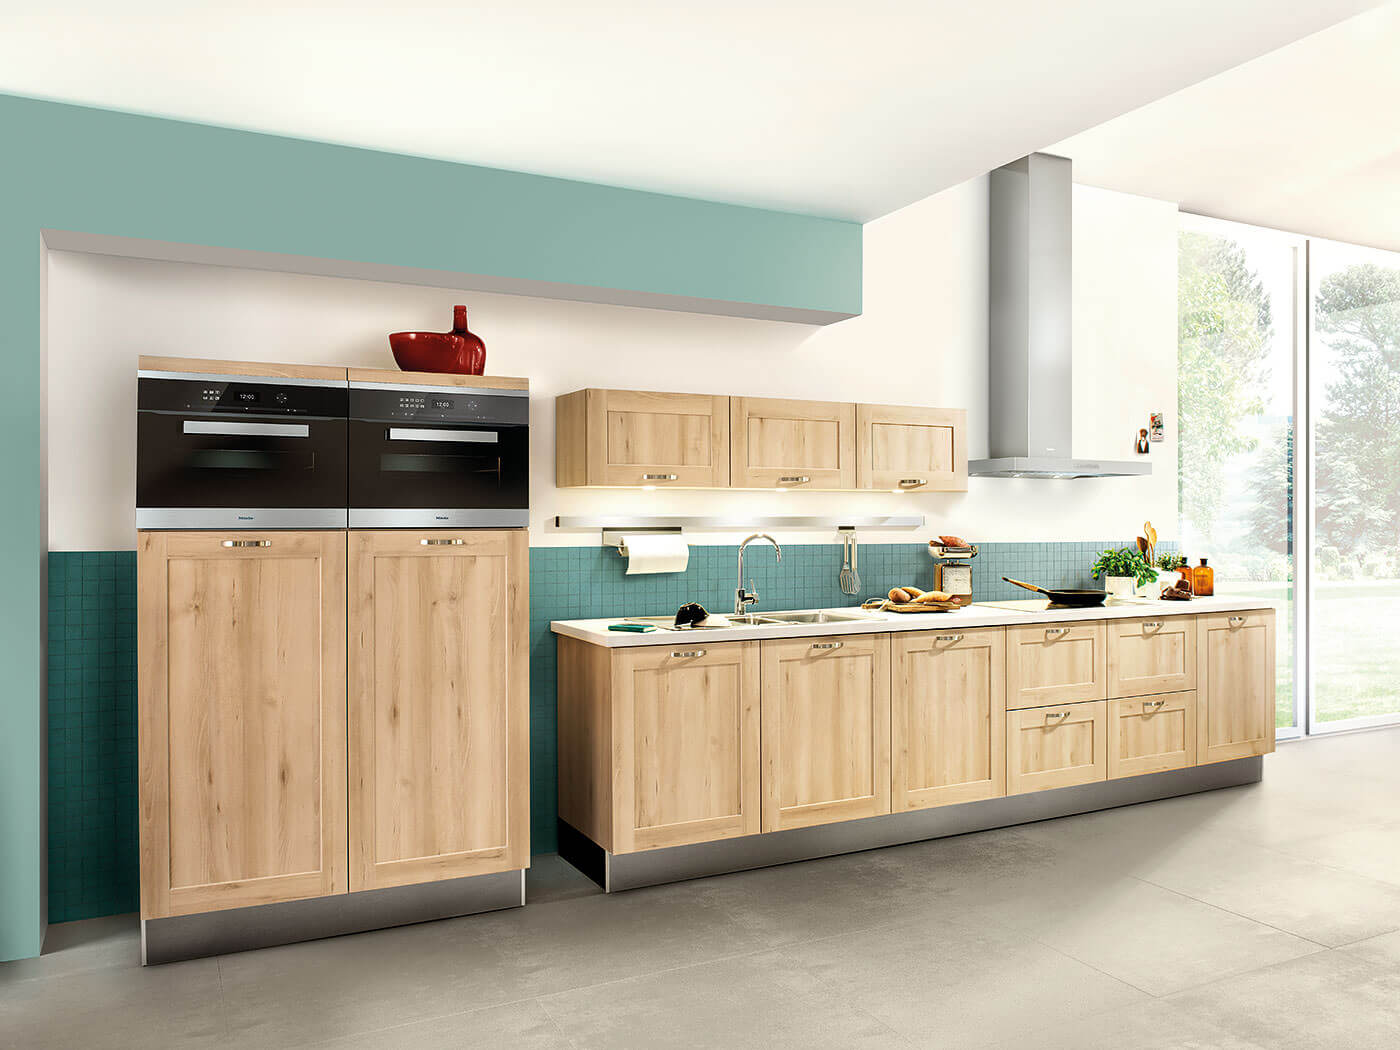 Auch eine Landhausküche kann modern auftreten. Das beweist dieses Modell in heller Holzoptik und mit Rahmenfronten. 